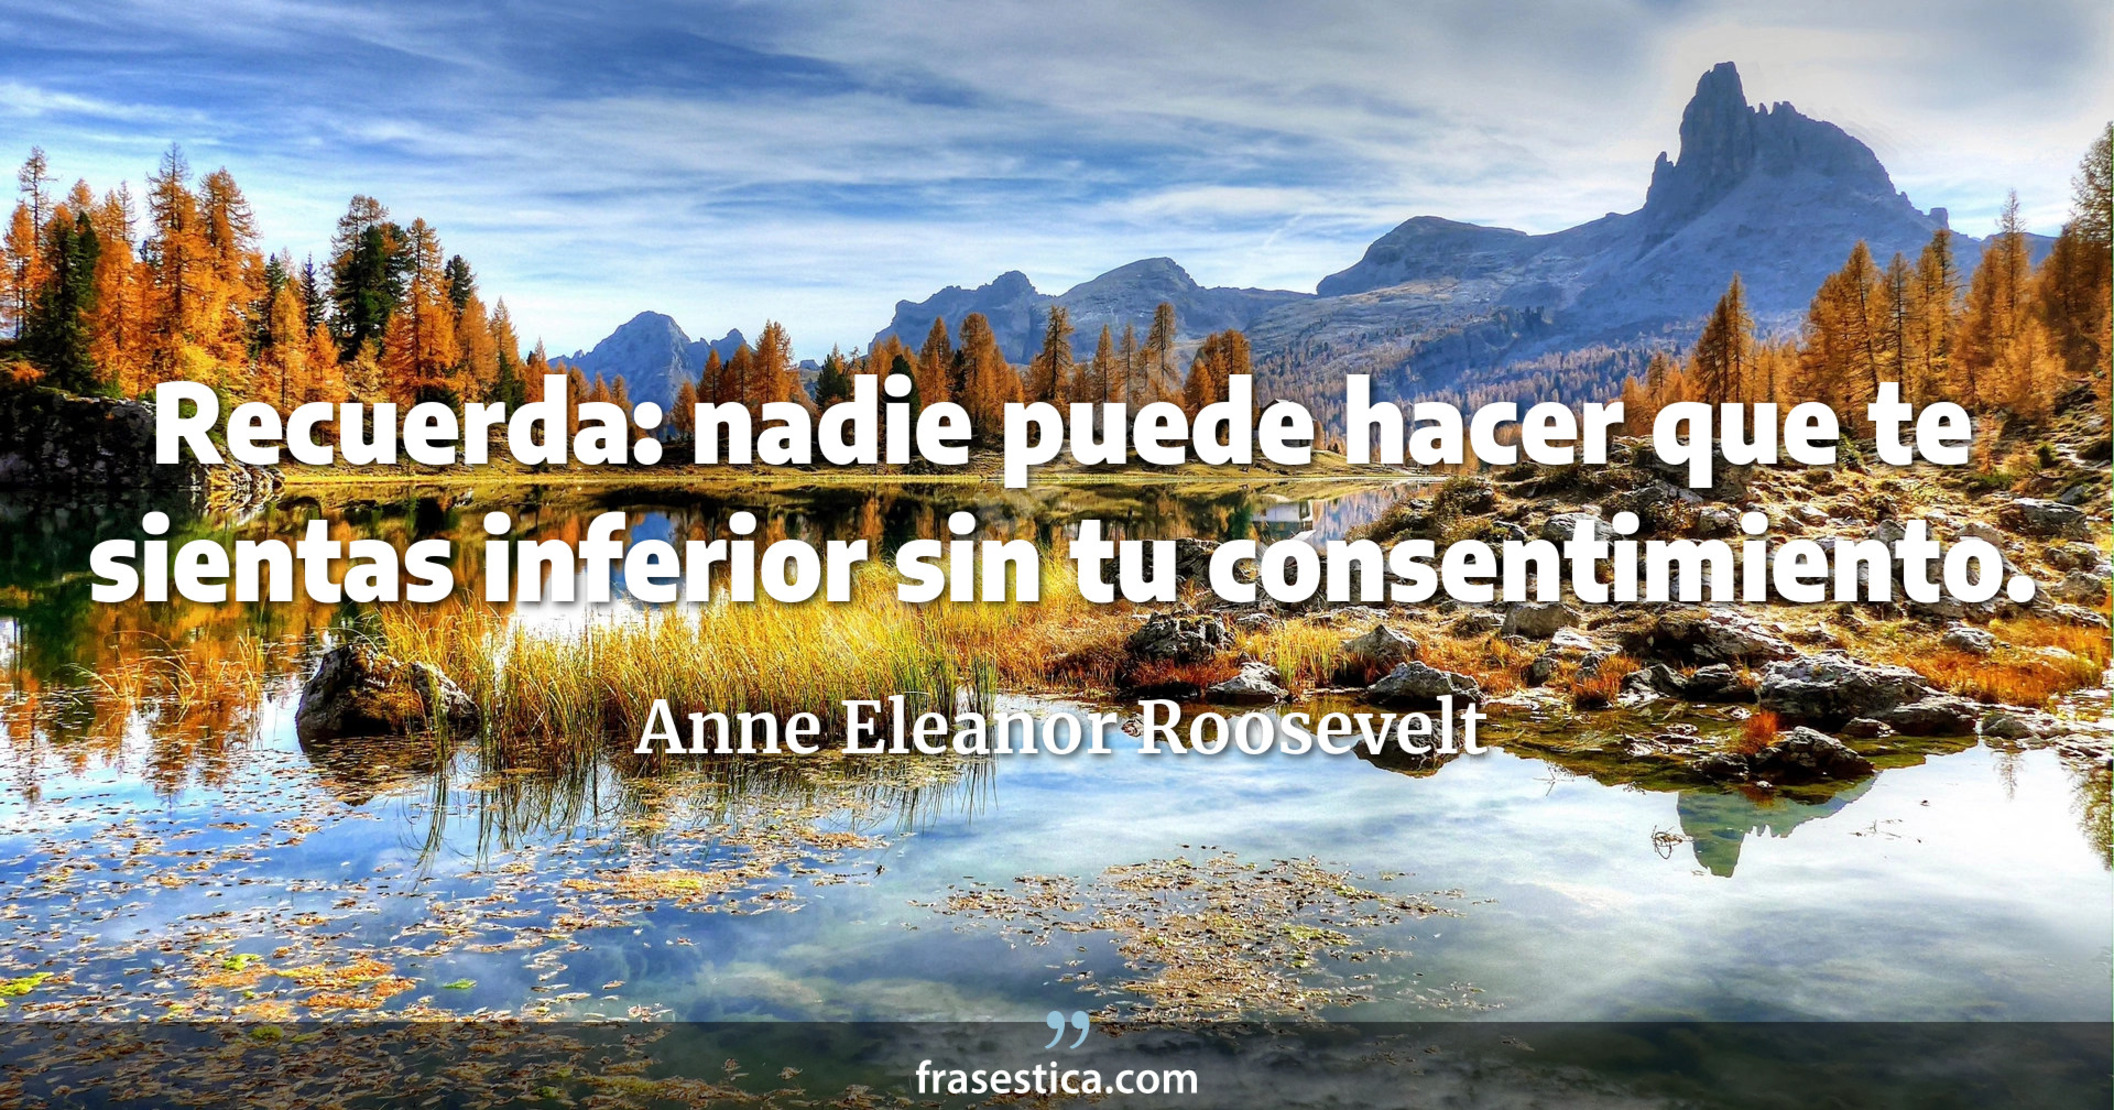 Recuerda: nadie puede hacer que te sientas inferior sin tu consentimiento. - Anne Eleanor Roosevelt